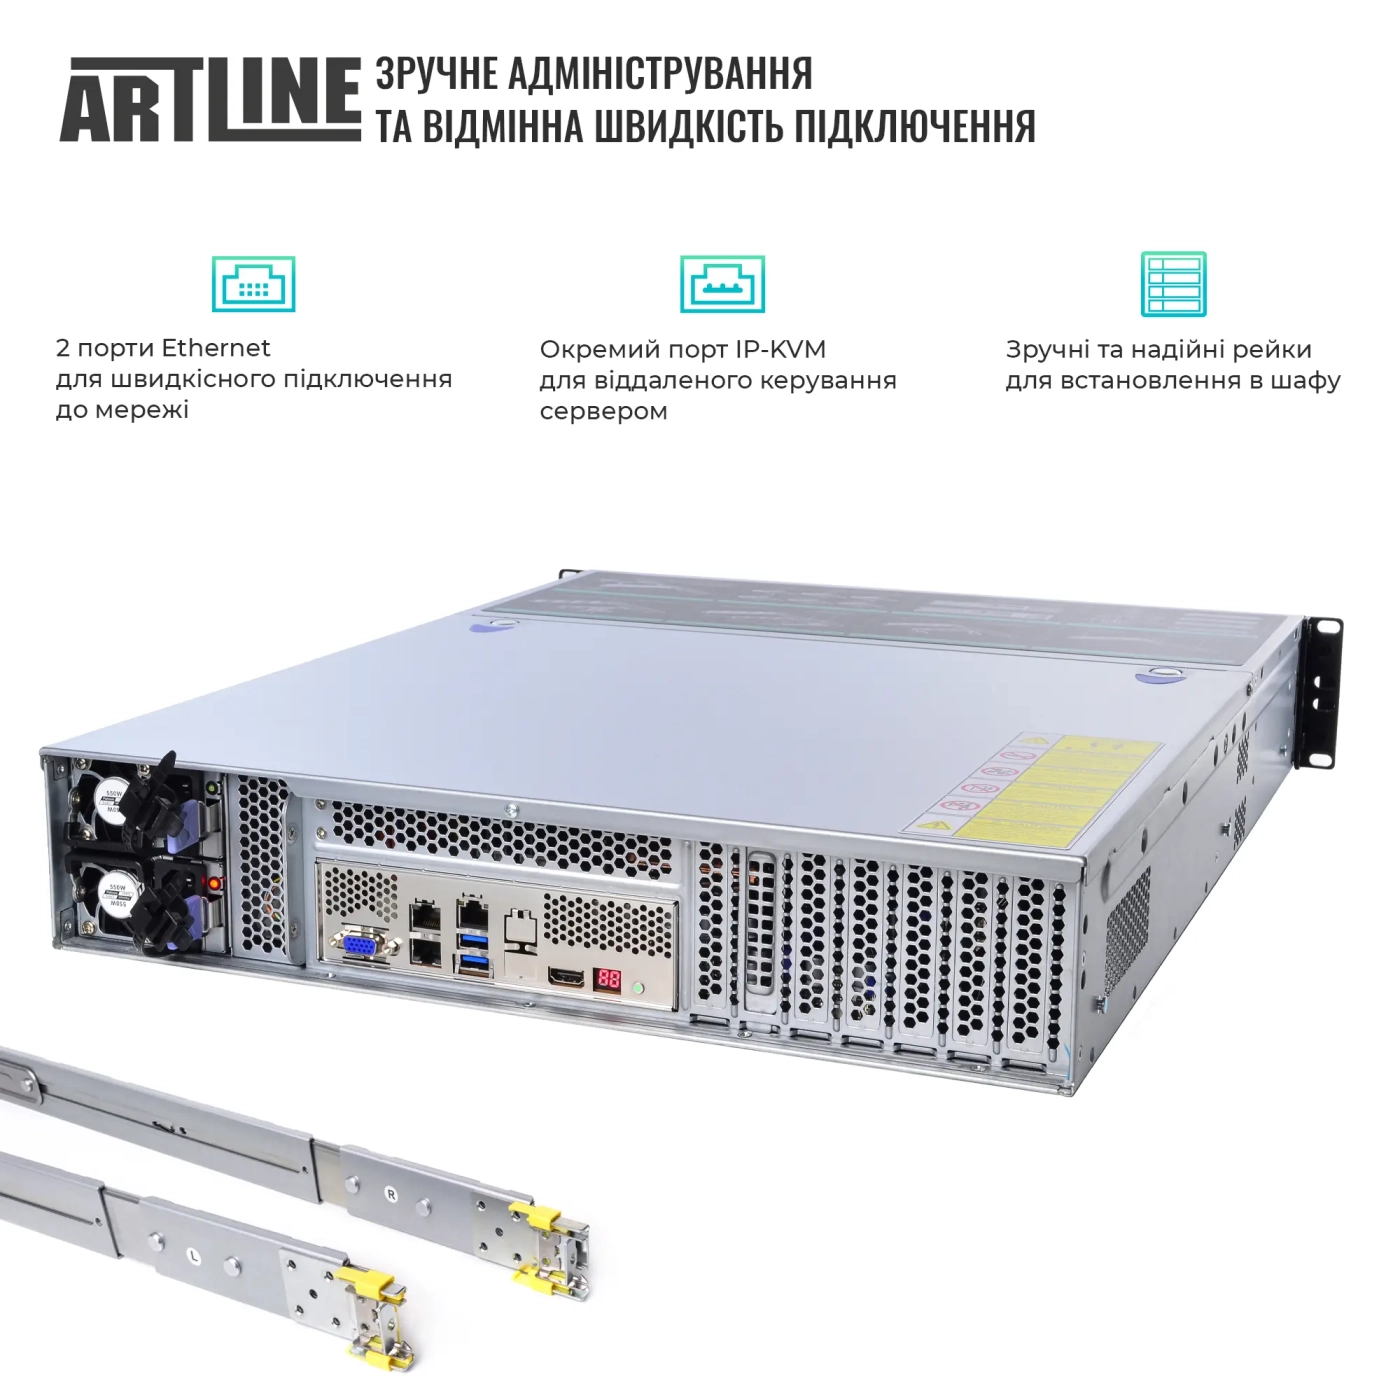 Купить Сервер ARTLINE Business R35 (R35v58) - фото 3